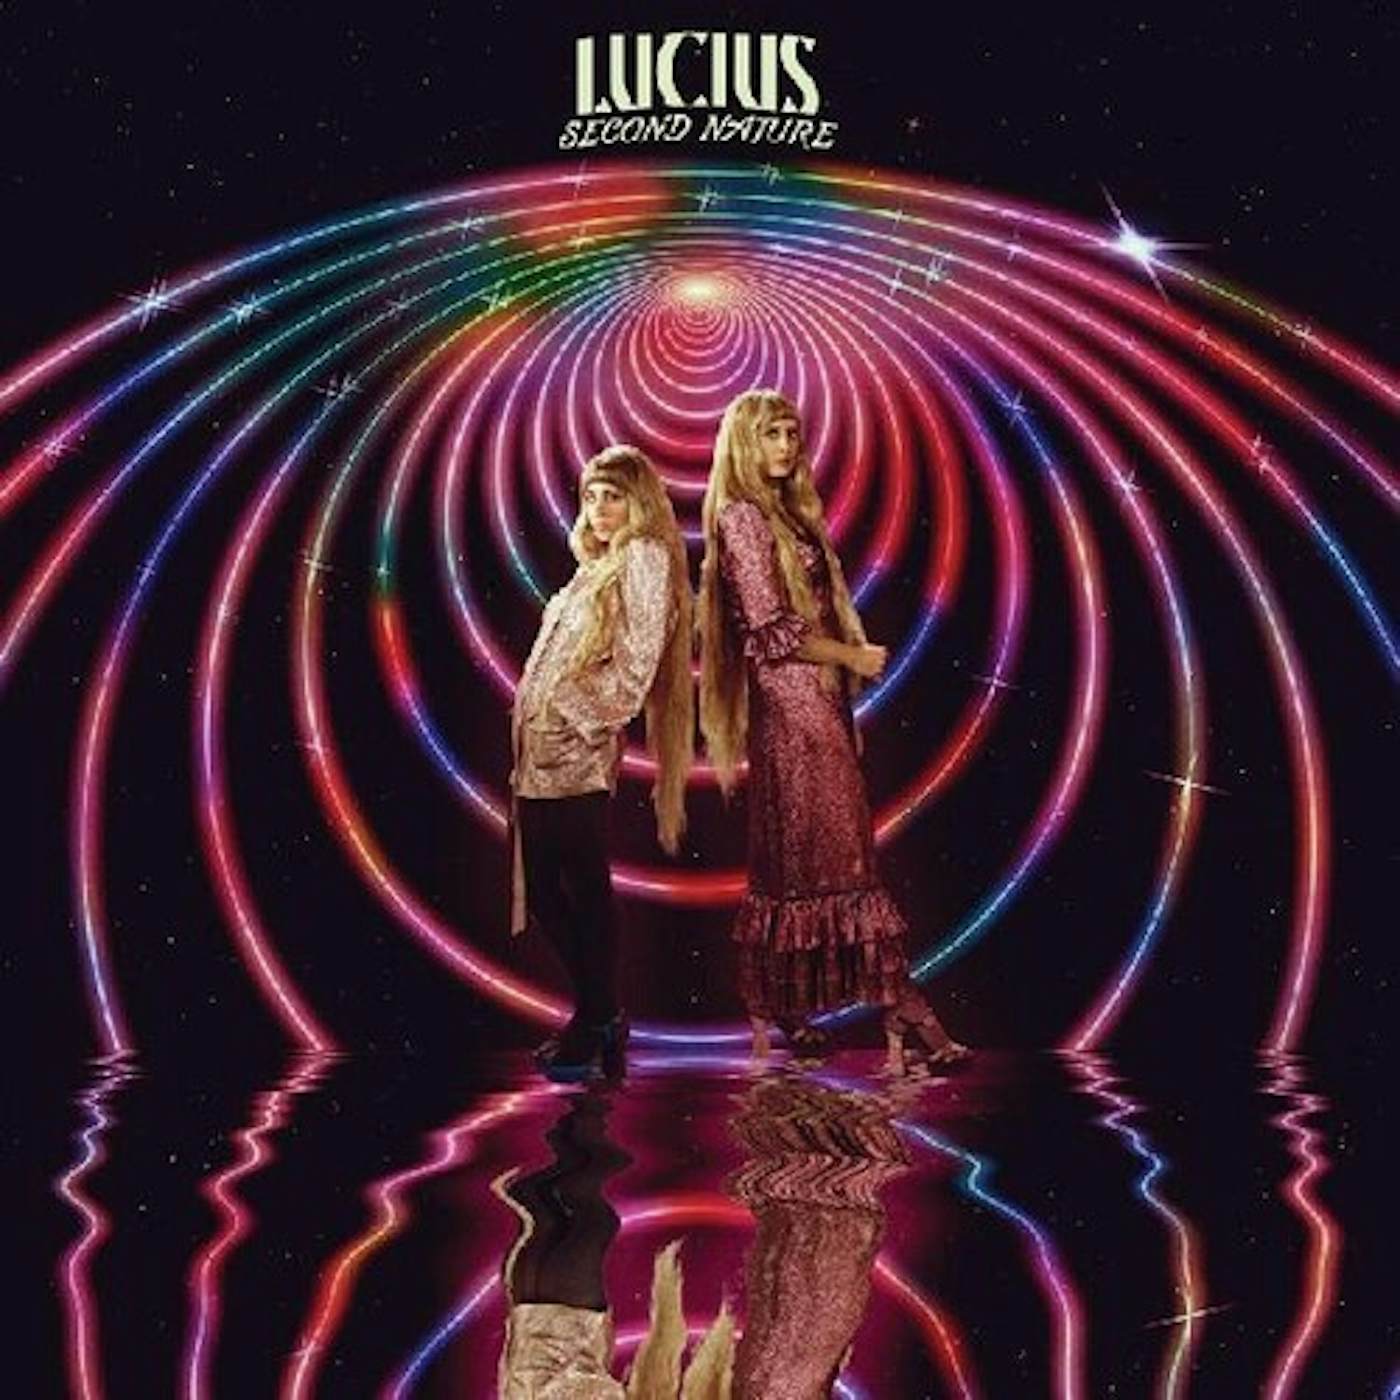 Lucius Second Nature Vinyl Record